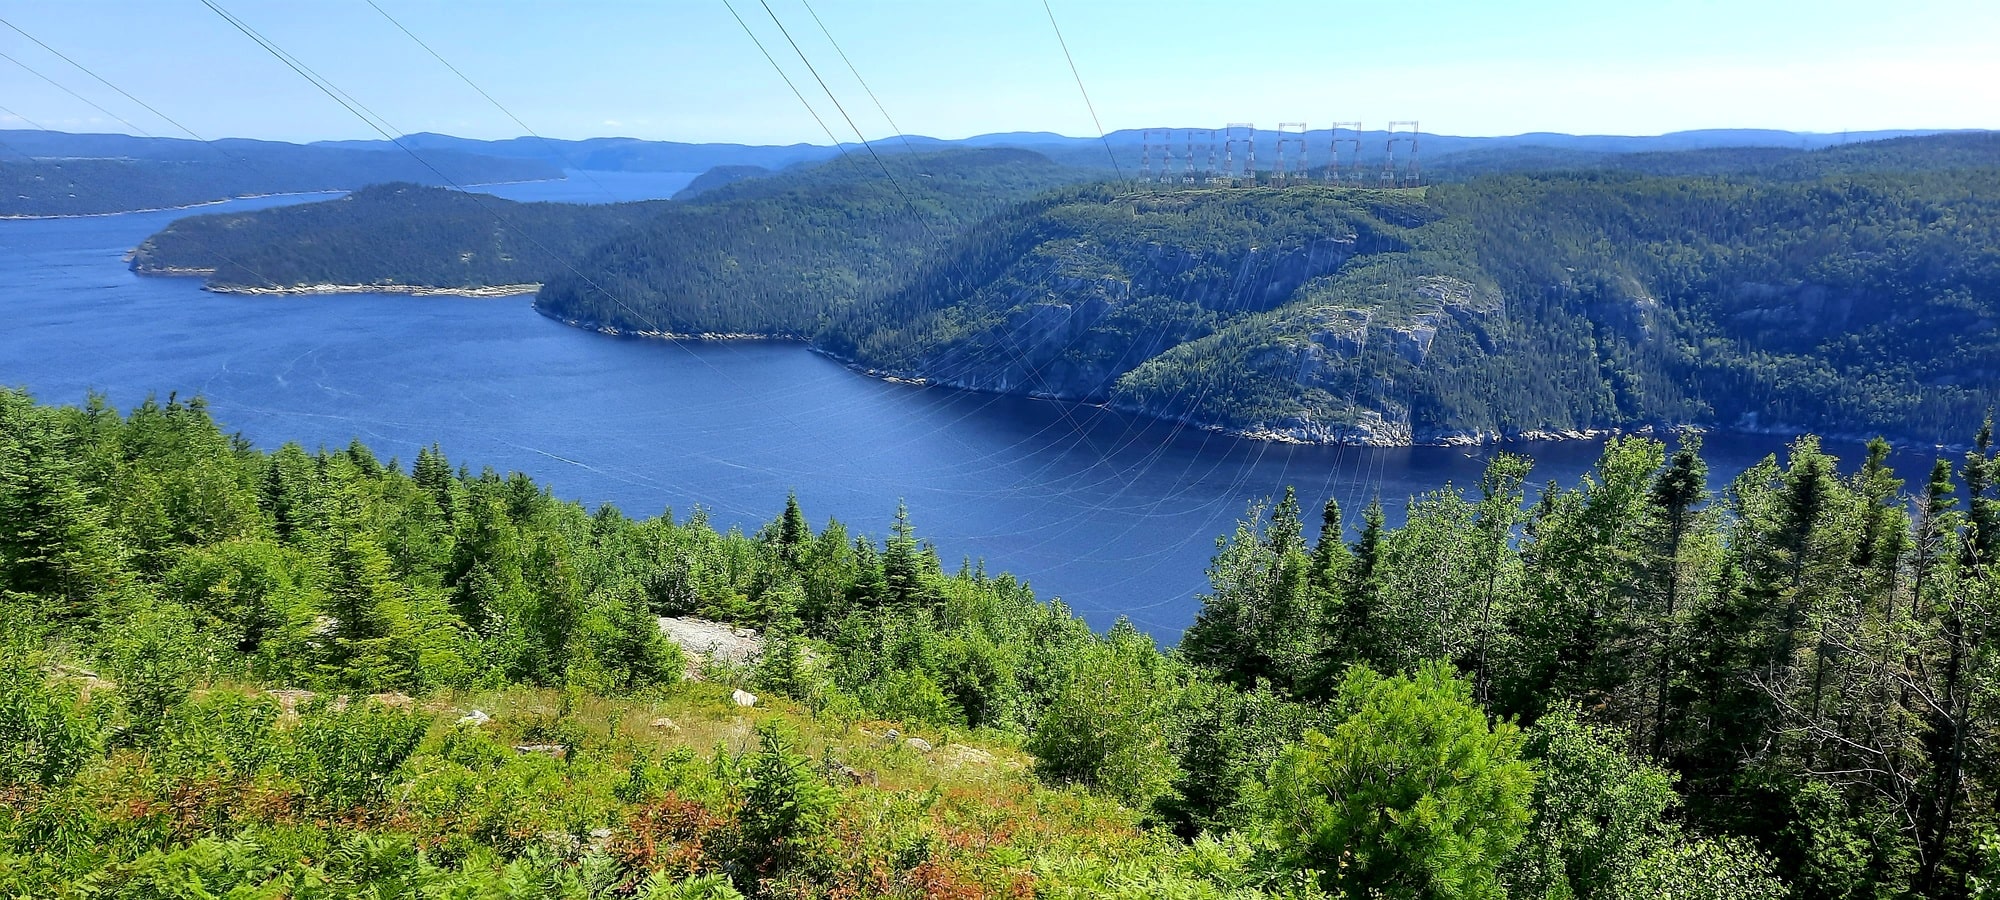 Pylônes électriques sur le sentier Le Fjord dans notre article Sentier le Fjord : 50 km de randonnée en autonomie dans le Parc national du Fjord du Saguenay #sentierLeFjord #fjord #saguenay #randonnee